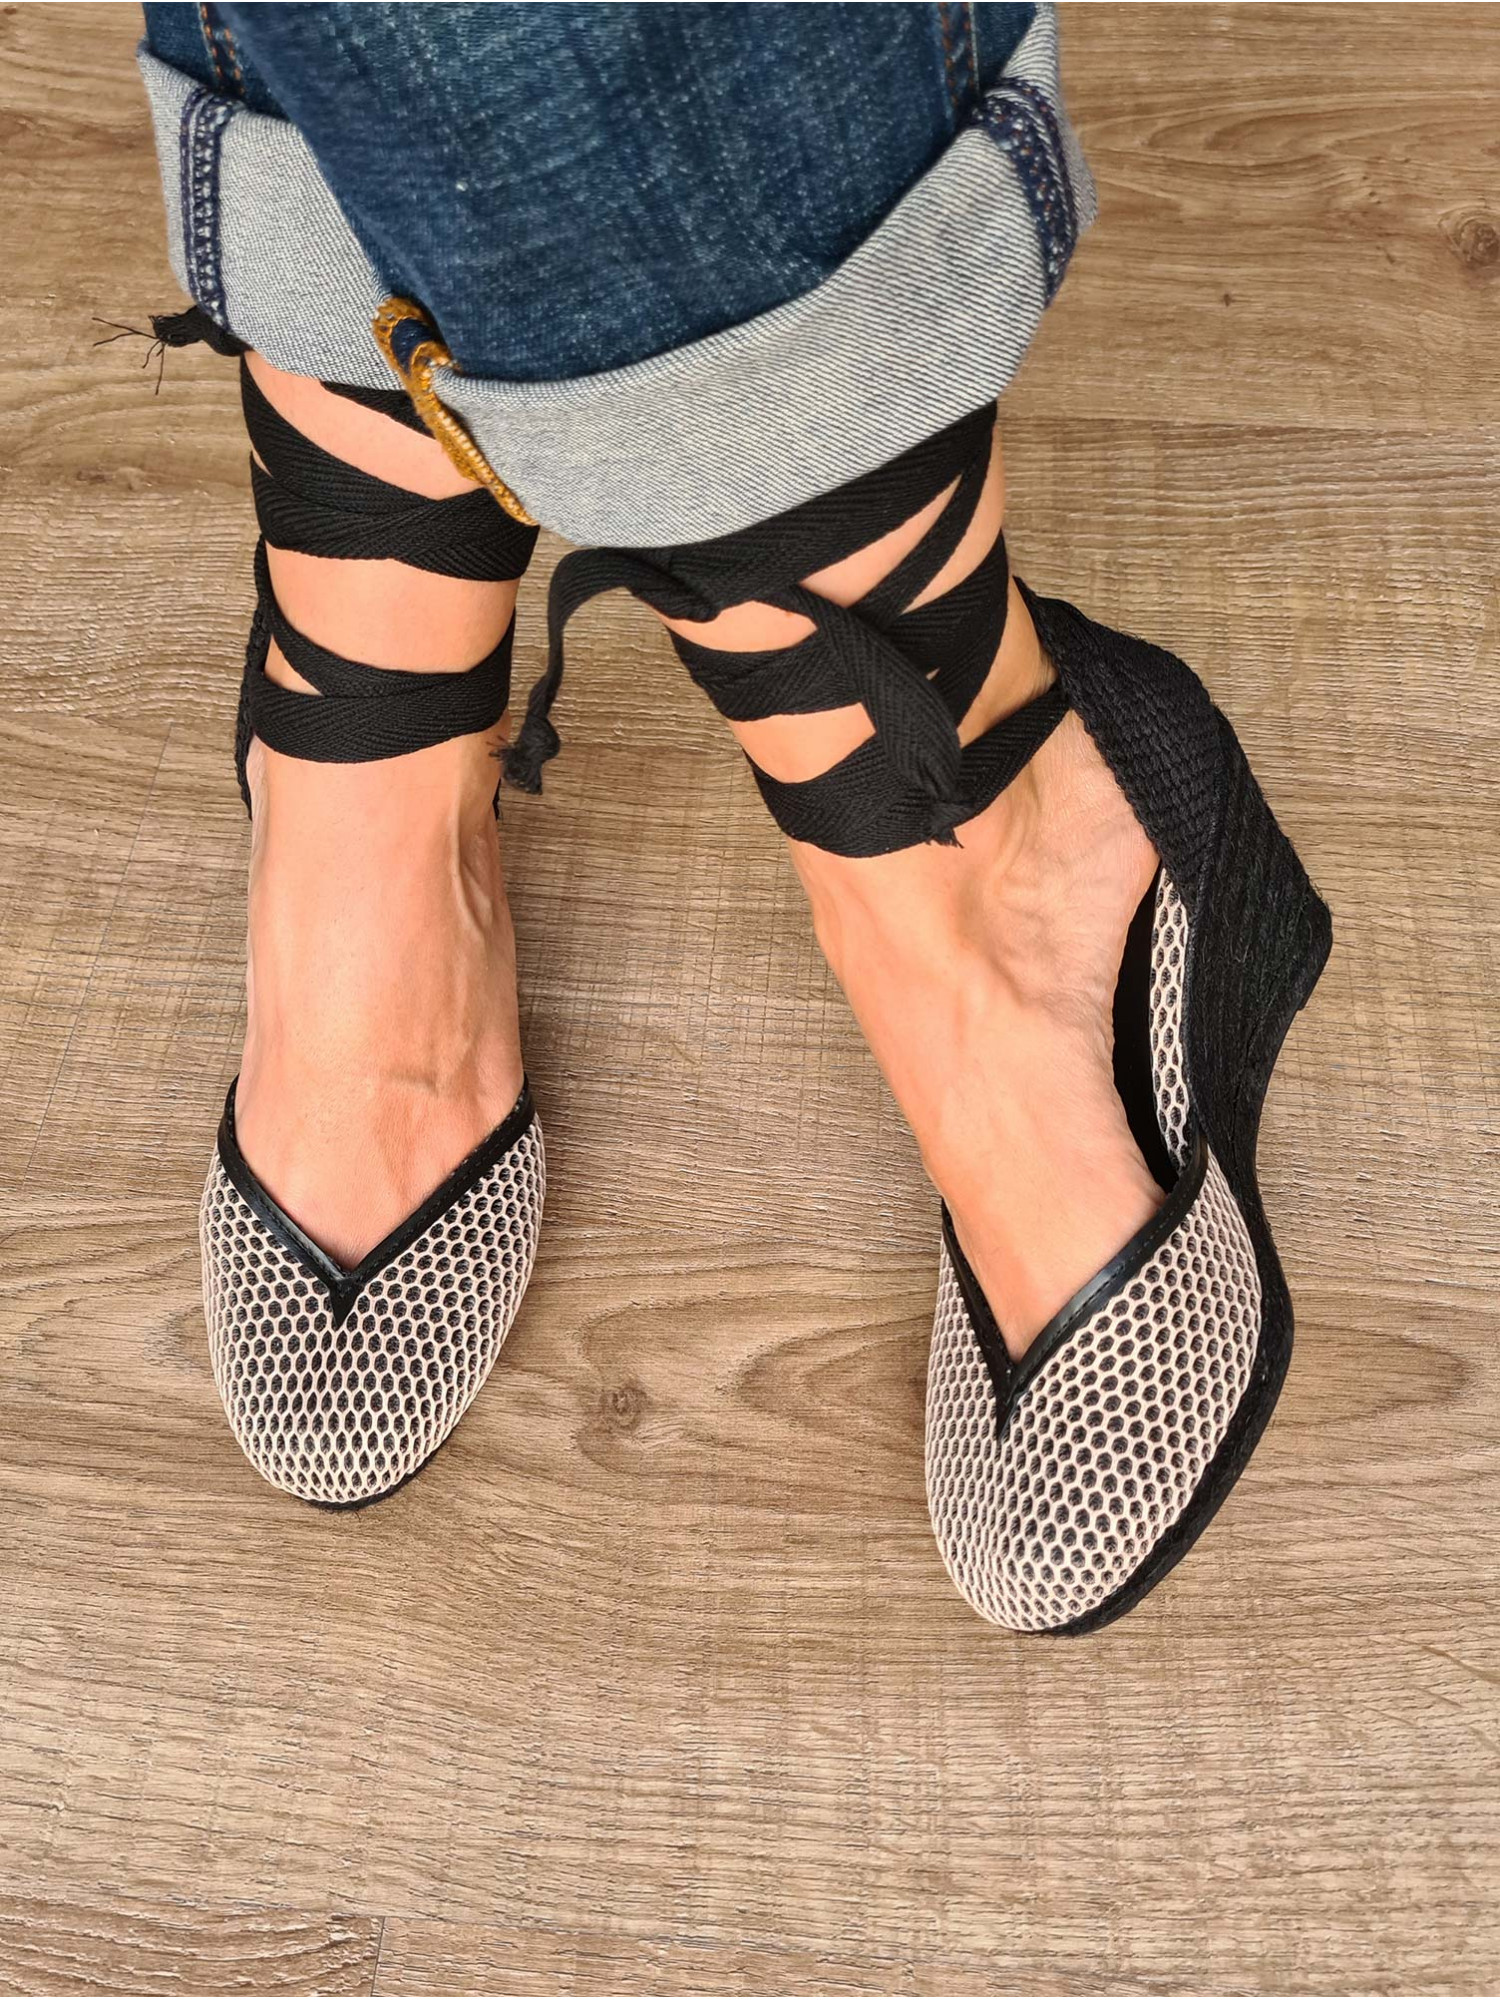 Sandalias de piel con cuña de esparto, cierre en cintas atadas a la pierna y tela en rejilla. Producto artesano 100% español.